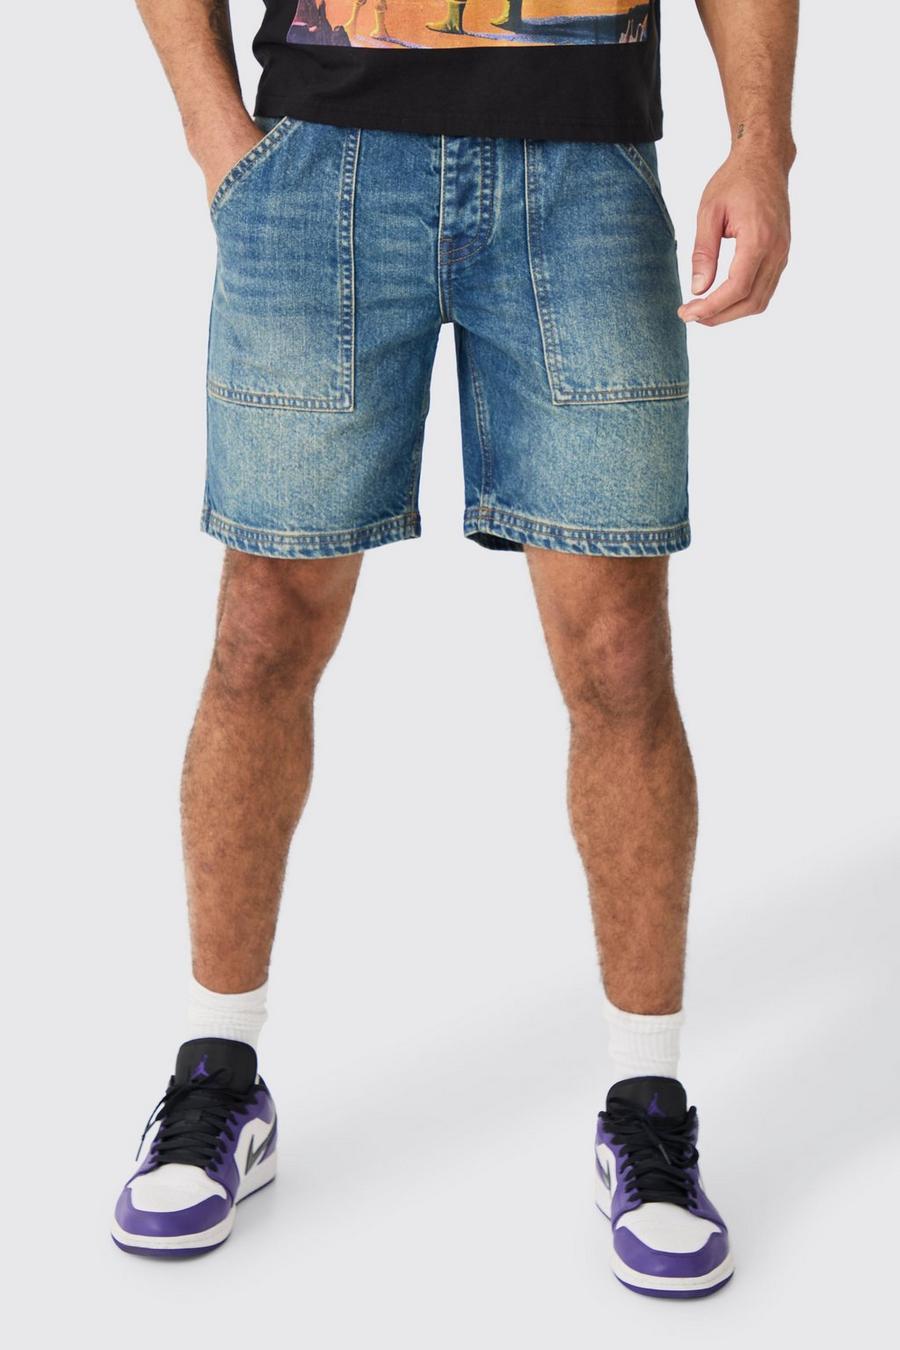 Pantalón corto vaquero ajustado sin tratar con costuras en contraste, Vintage blue